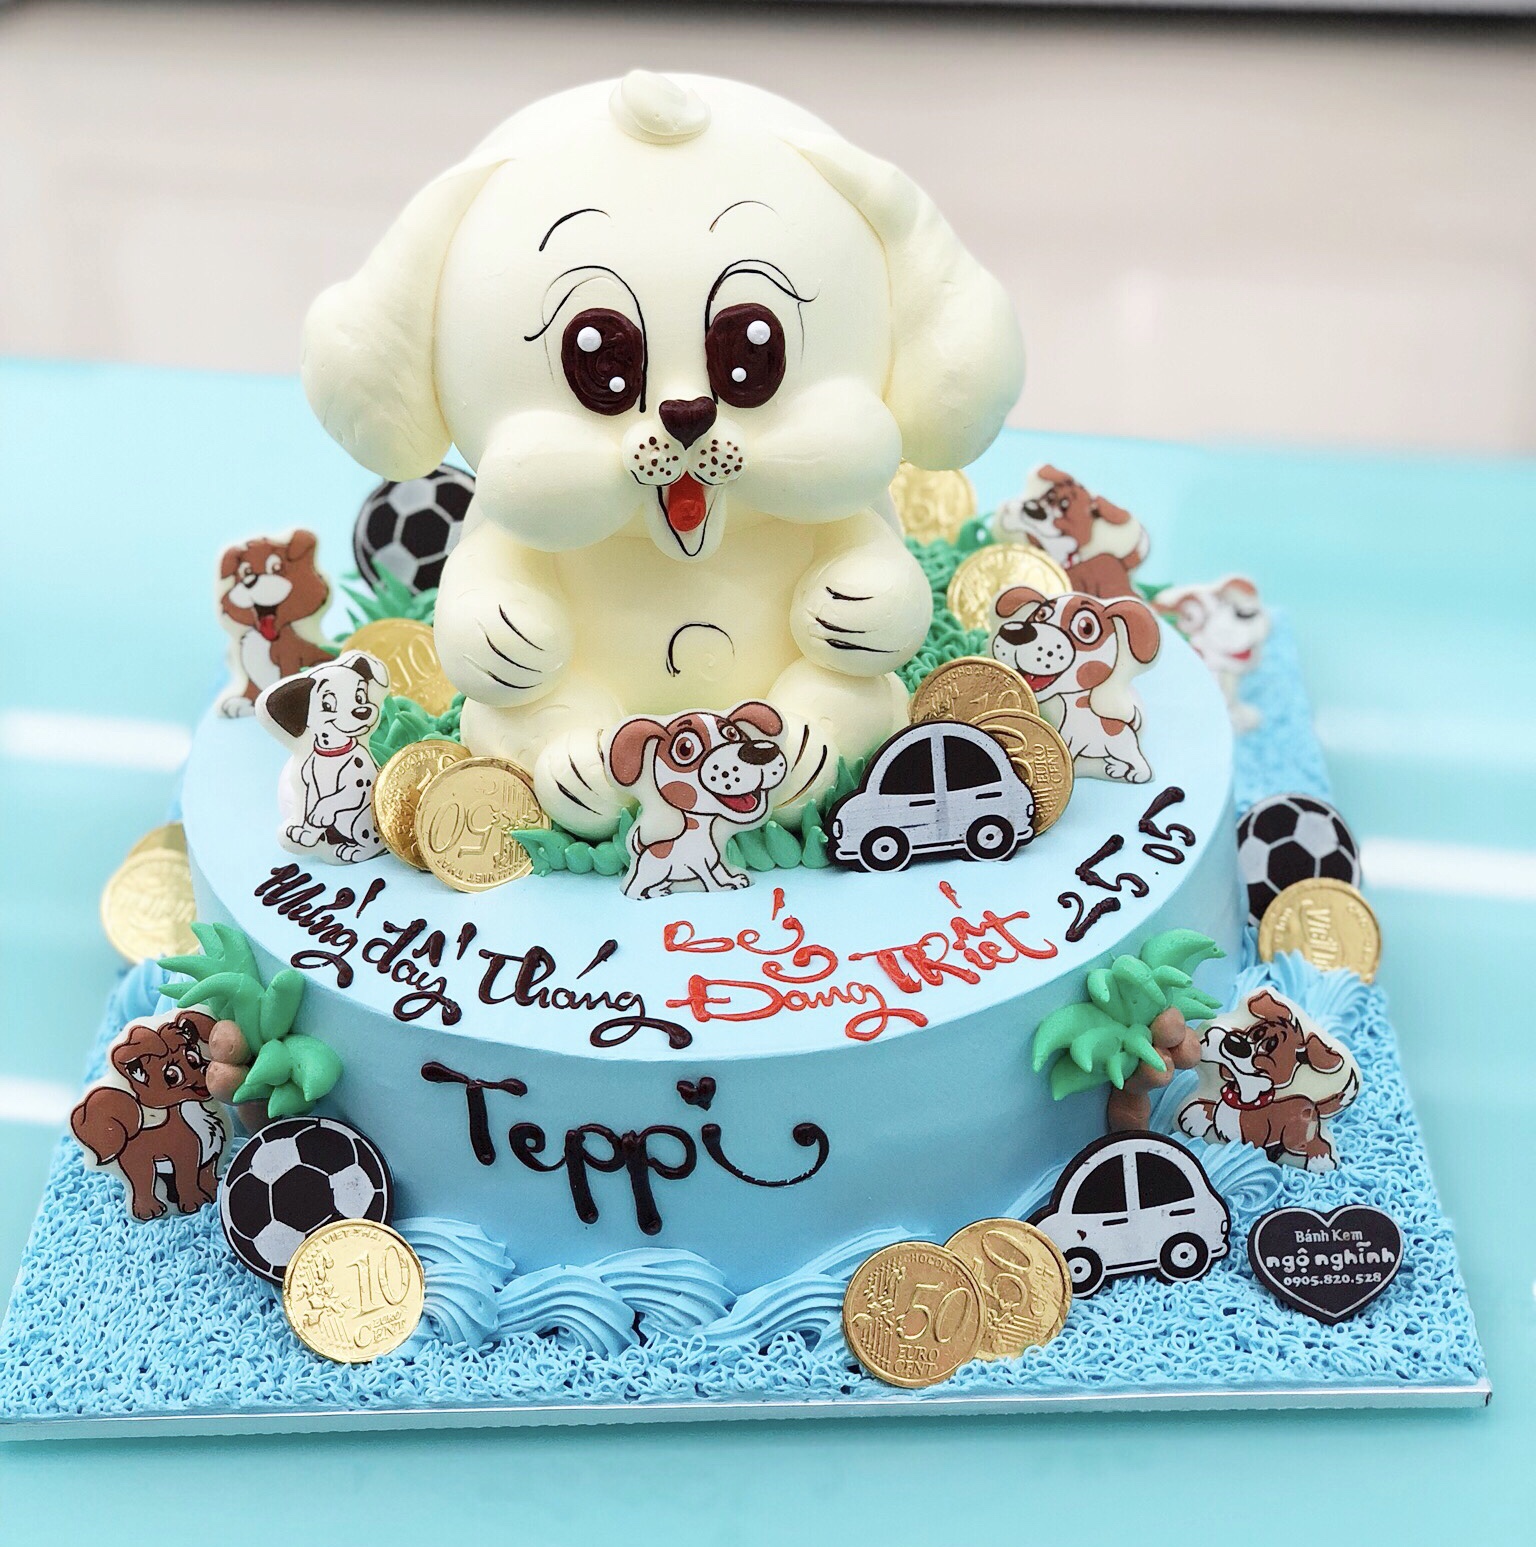 Bánh sinh nhật, đầy tháng vẽ hình con chó dễ thương cho bé tuổi tuất MS  V-0068 - Tiệm Bánh Chon Chon